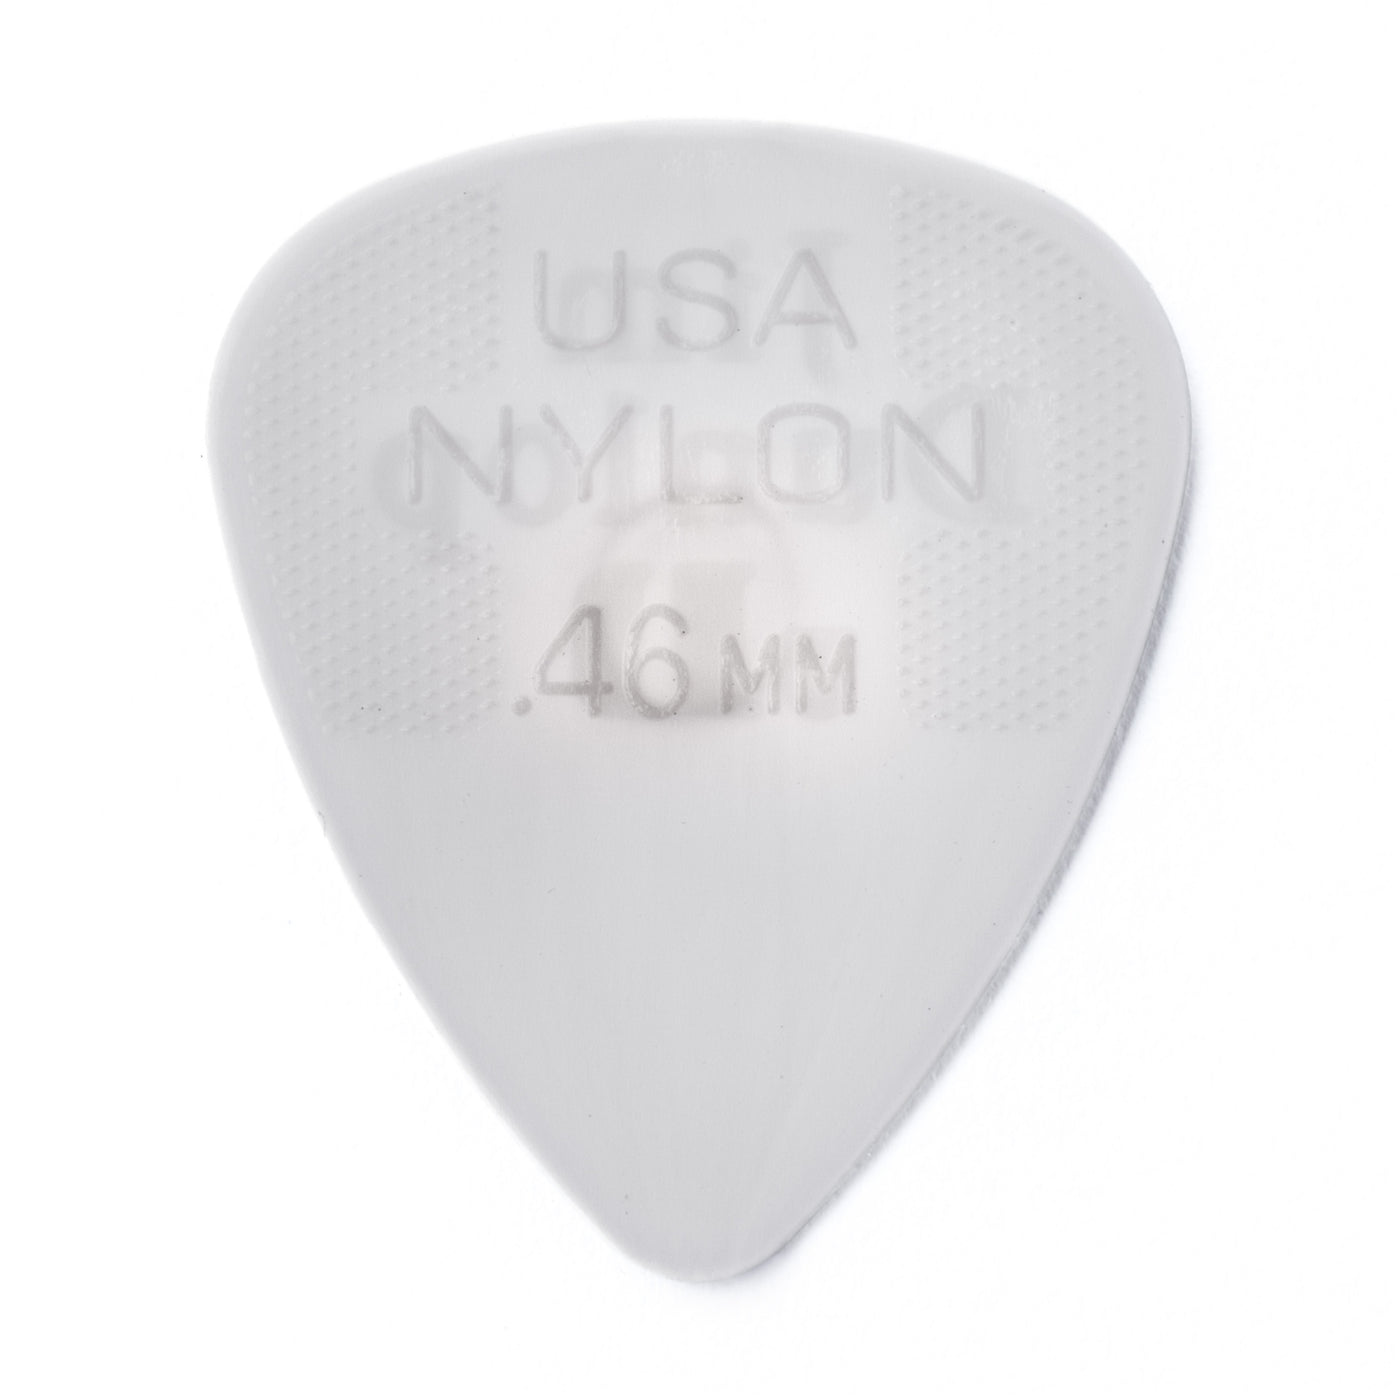 44R46 Nylon - .46mm cream